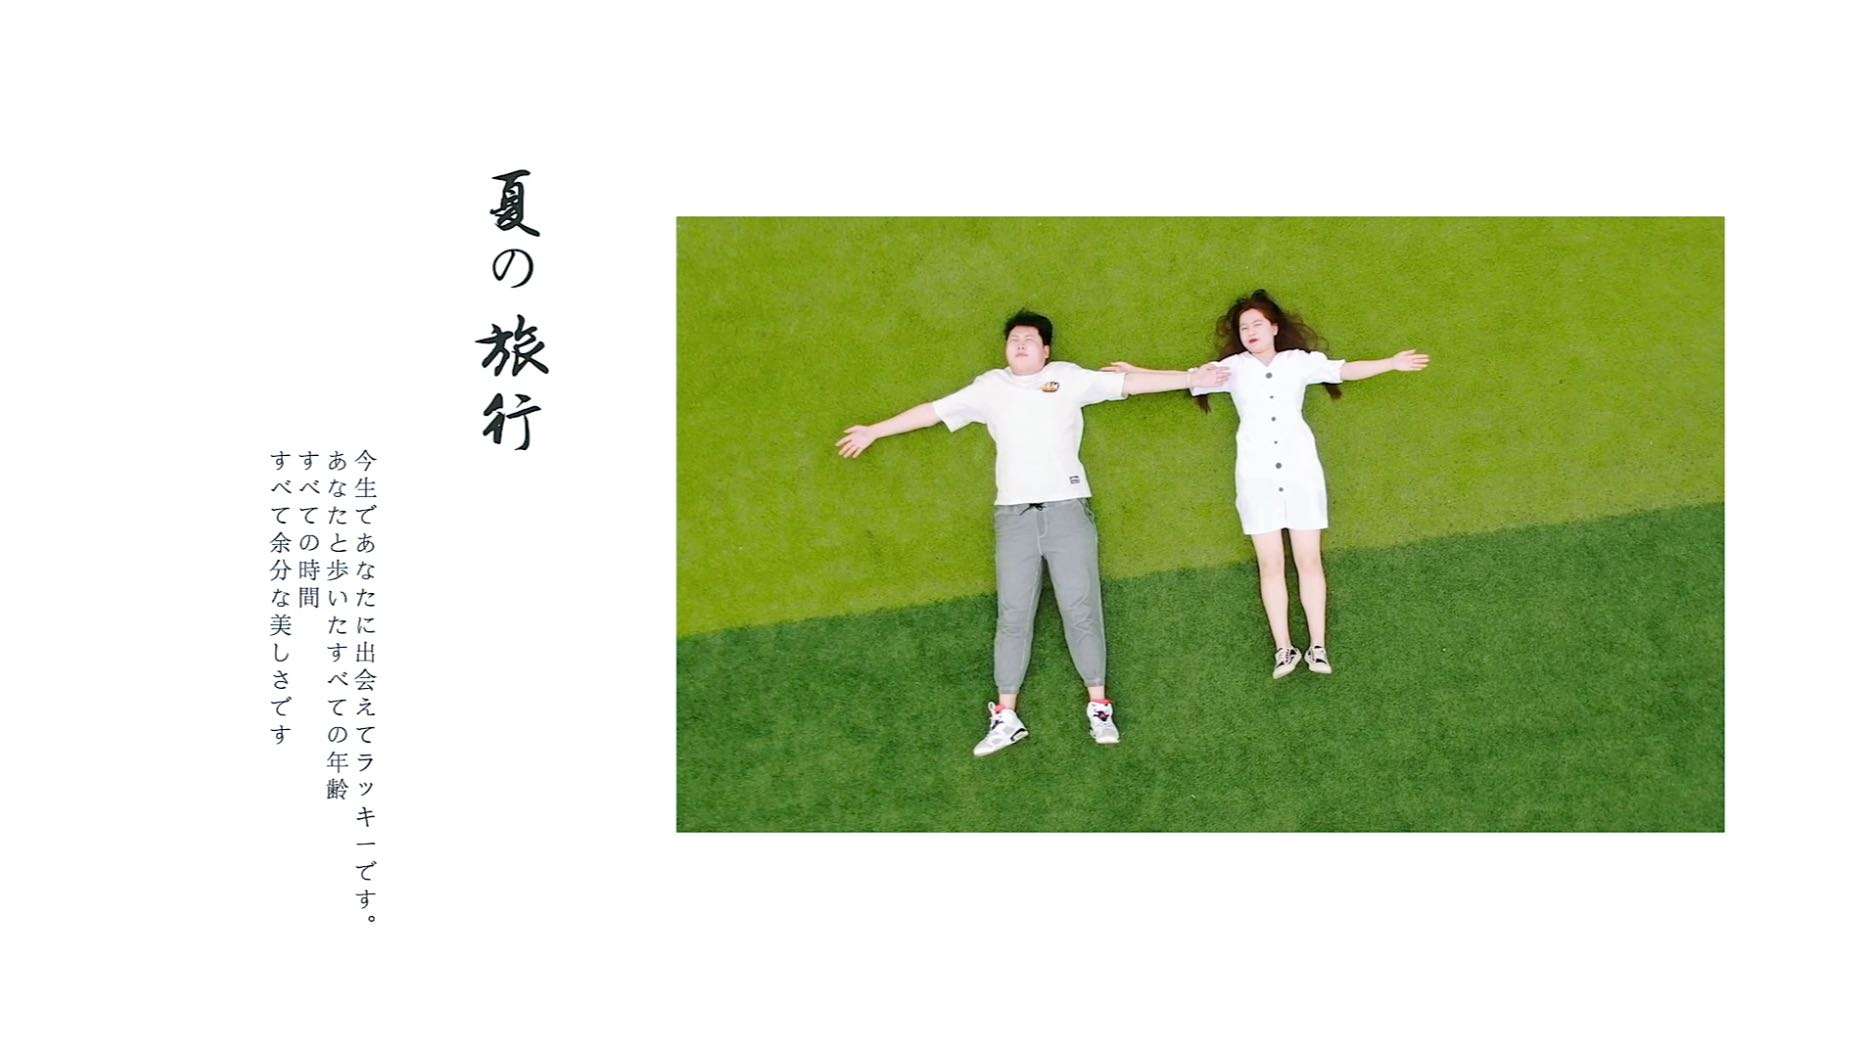 2022年06月26日「LiKeLong&ZhangMeng」香格里拉即时快剪